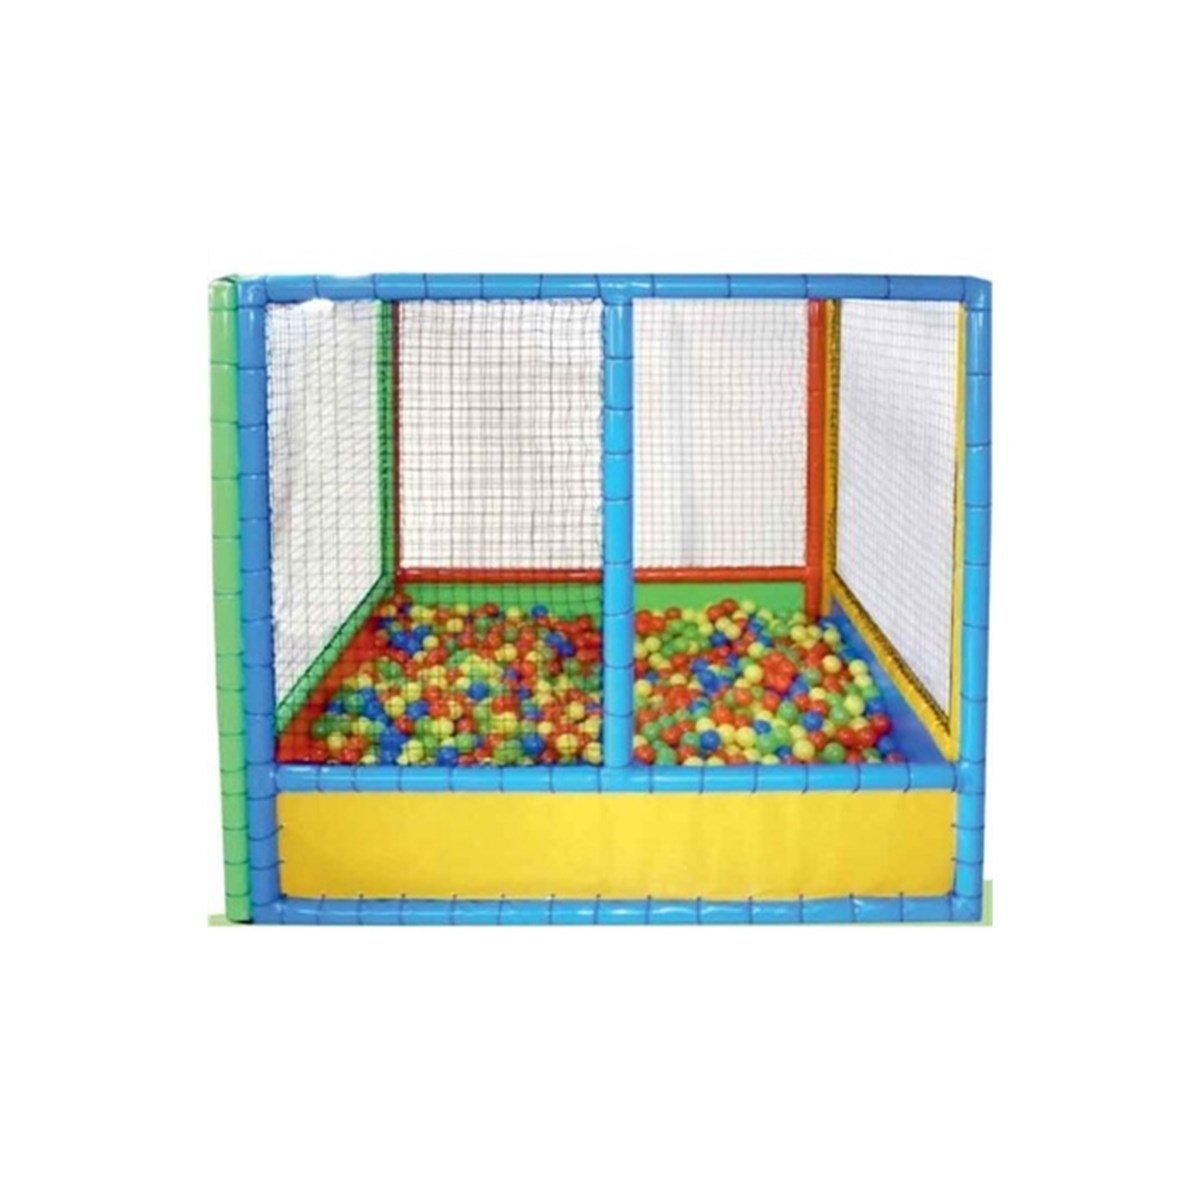 Soft Play Top Havuzu Dea-417 Fiyatı - Doğan Eğitim Araçları Oyuncakları -  Doğan Oyuncak Dünyası